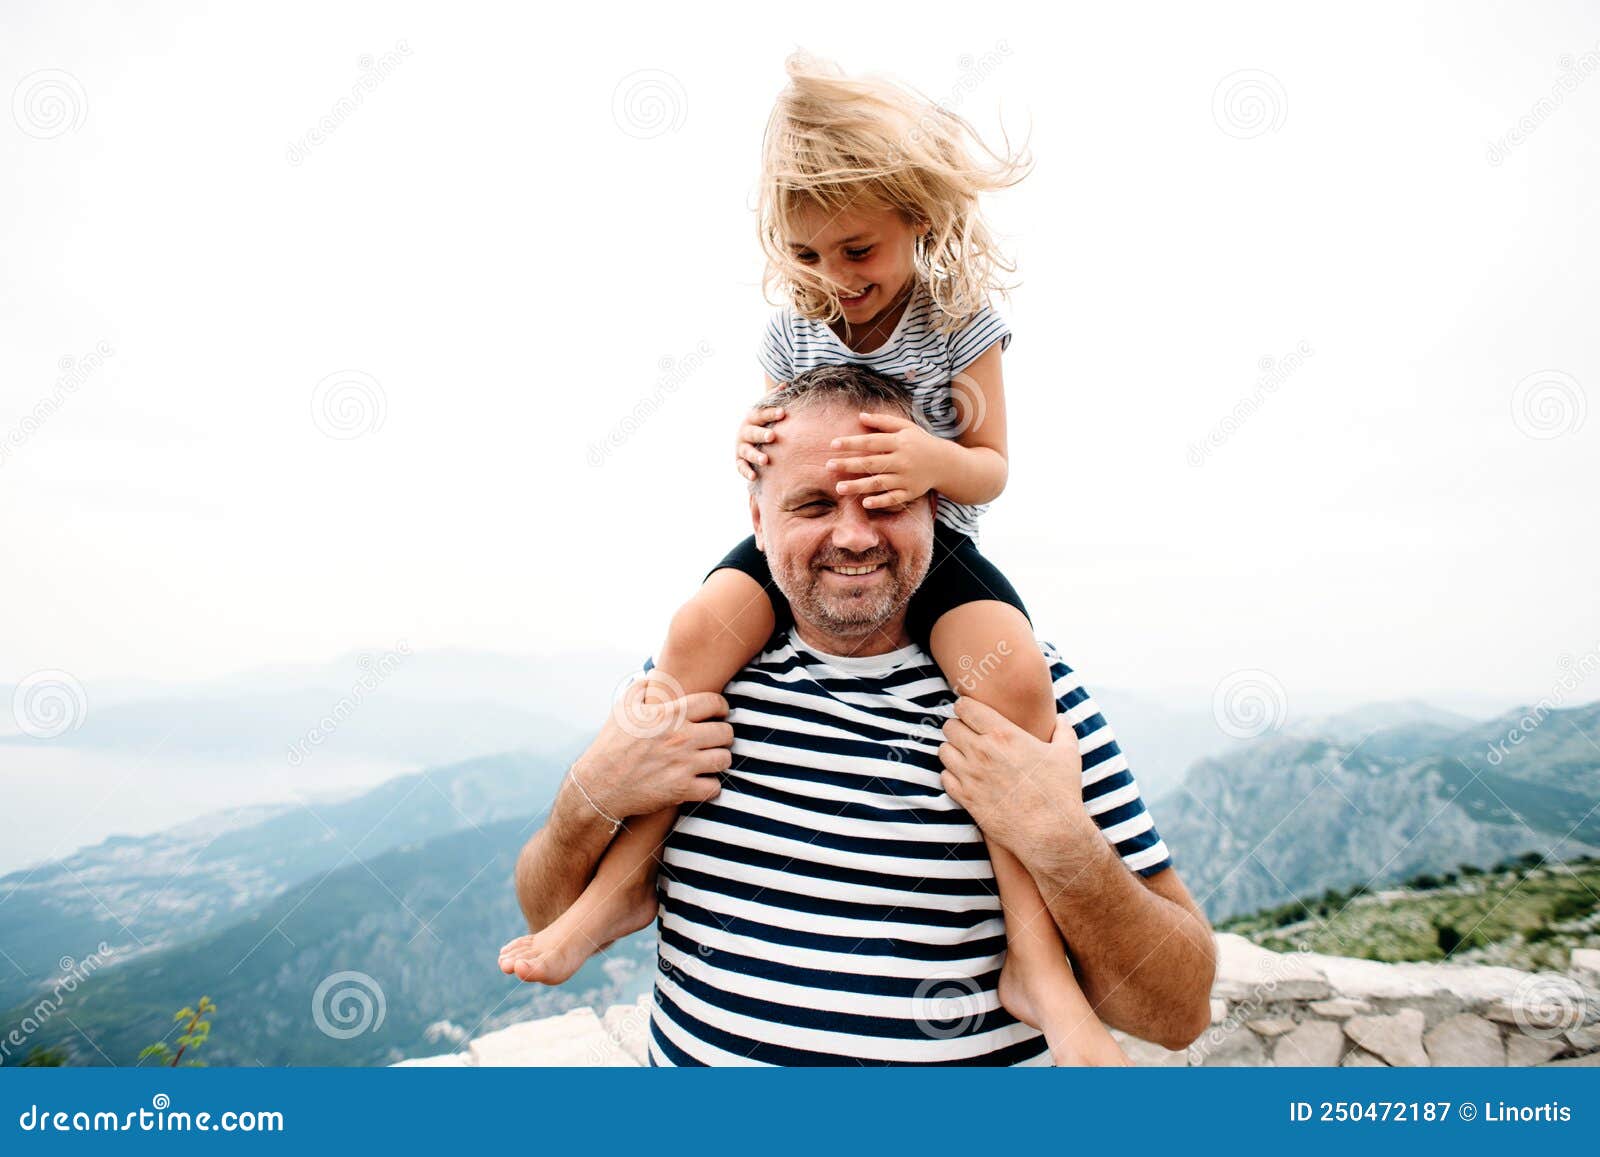 骑在爸爸肩膀上发父子背影高清摄影大图-千库网